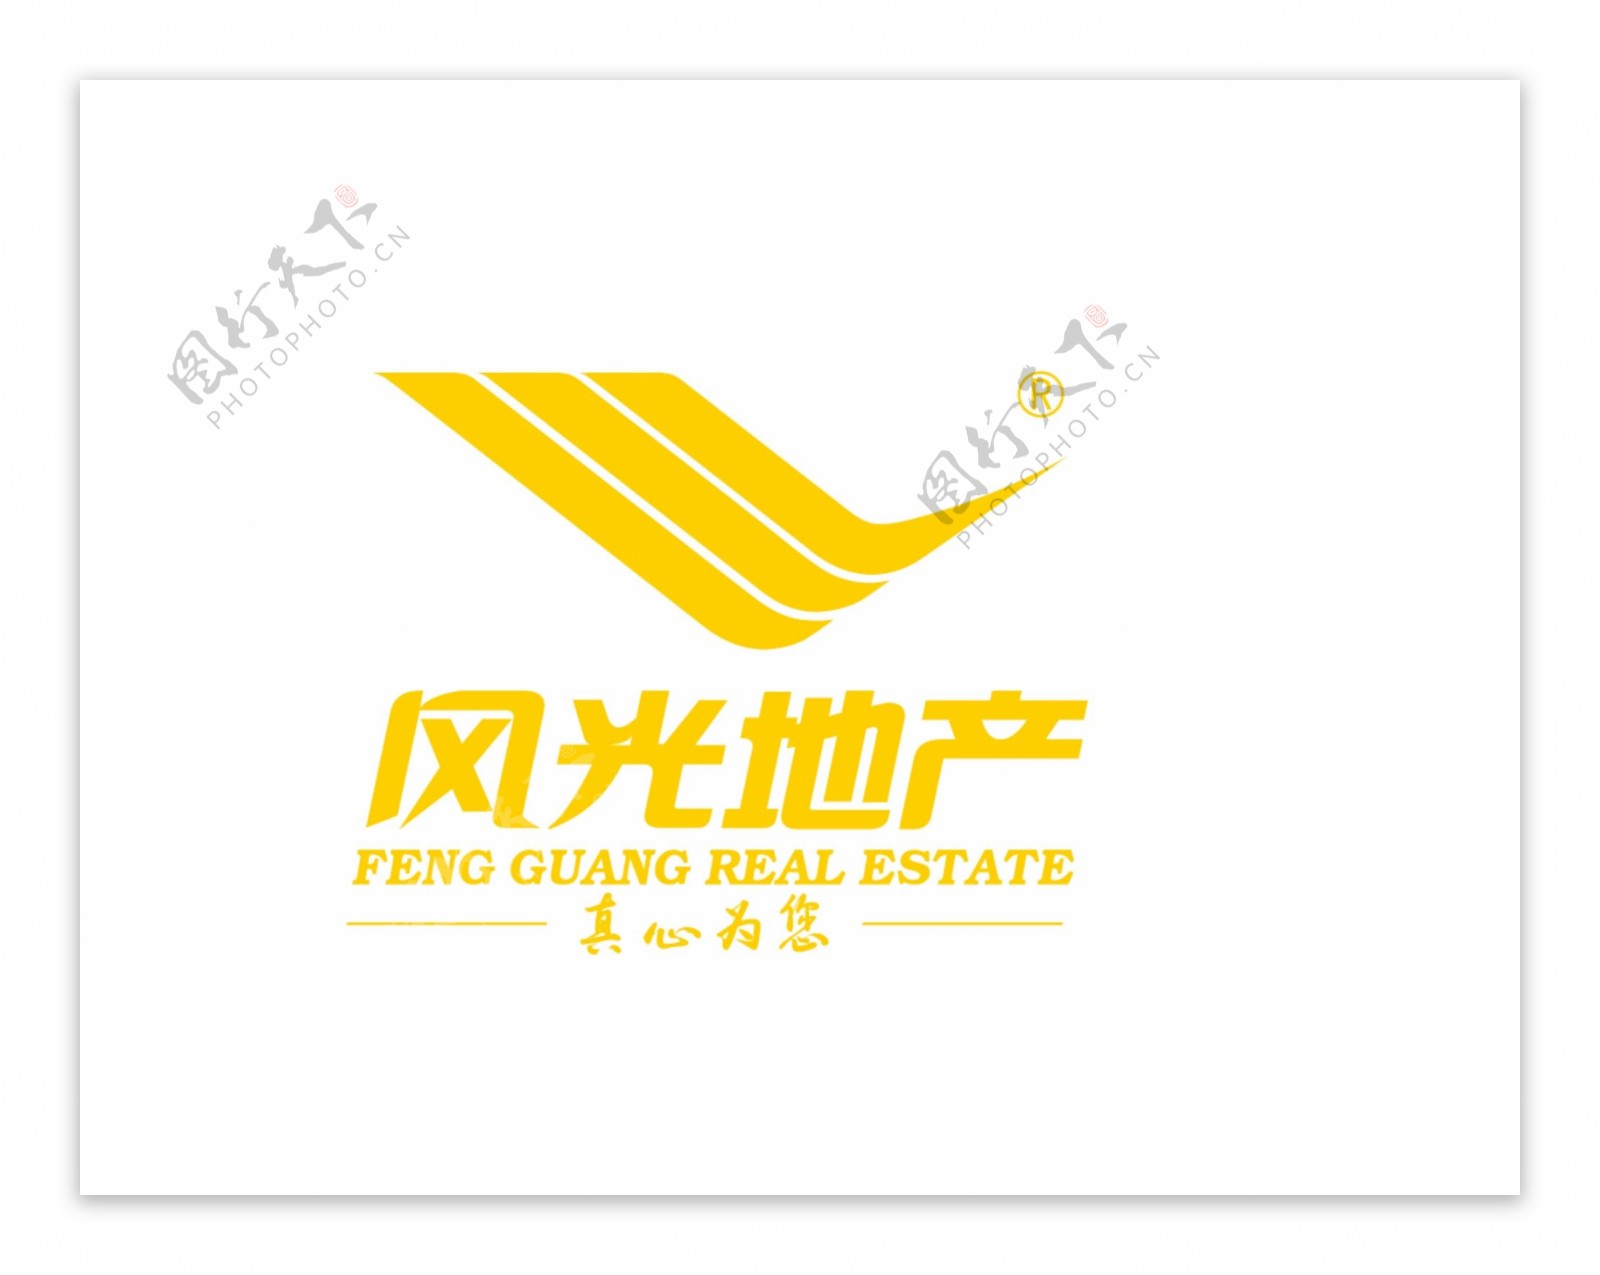 风光地产黄色logo图片